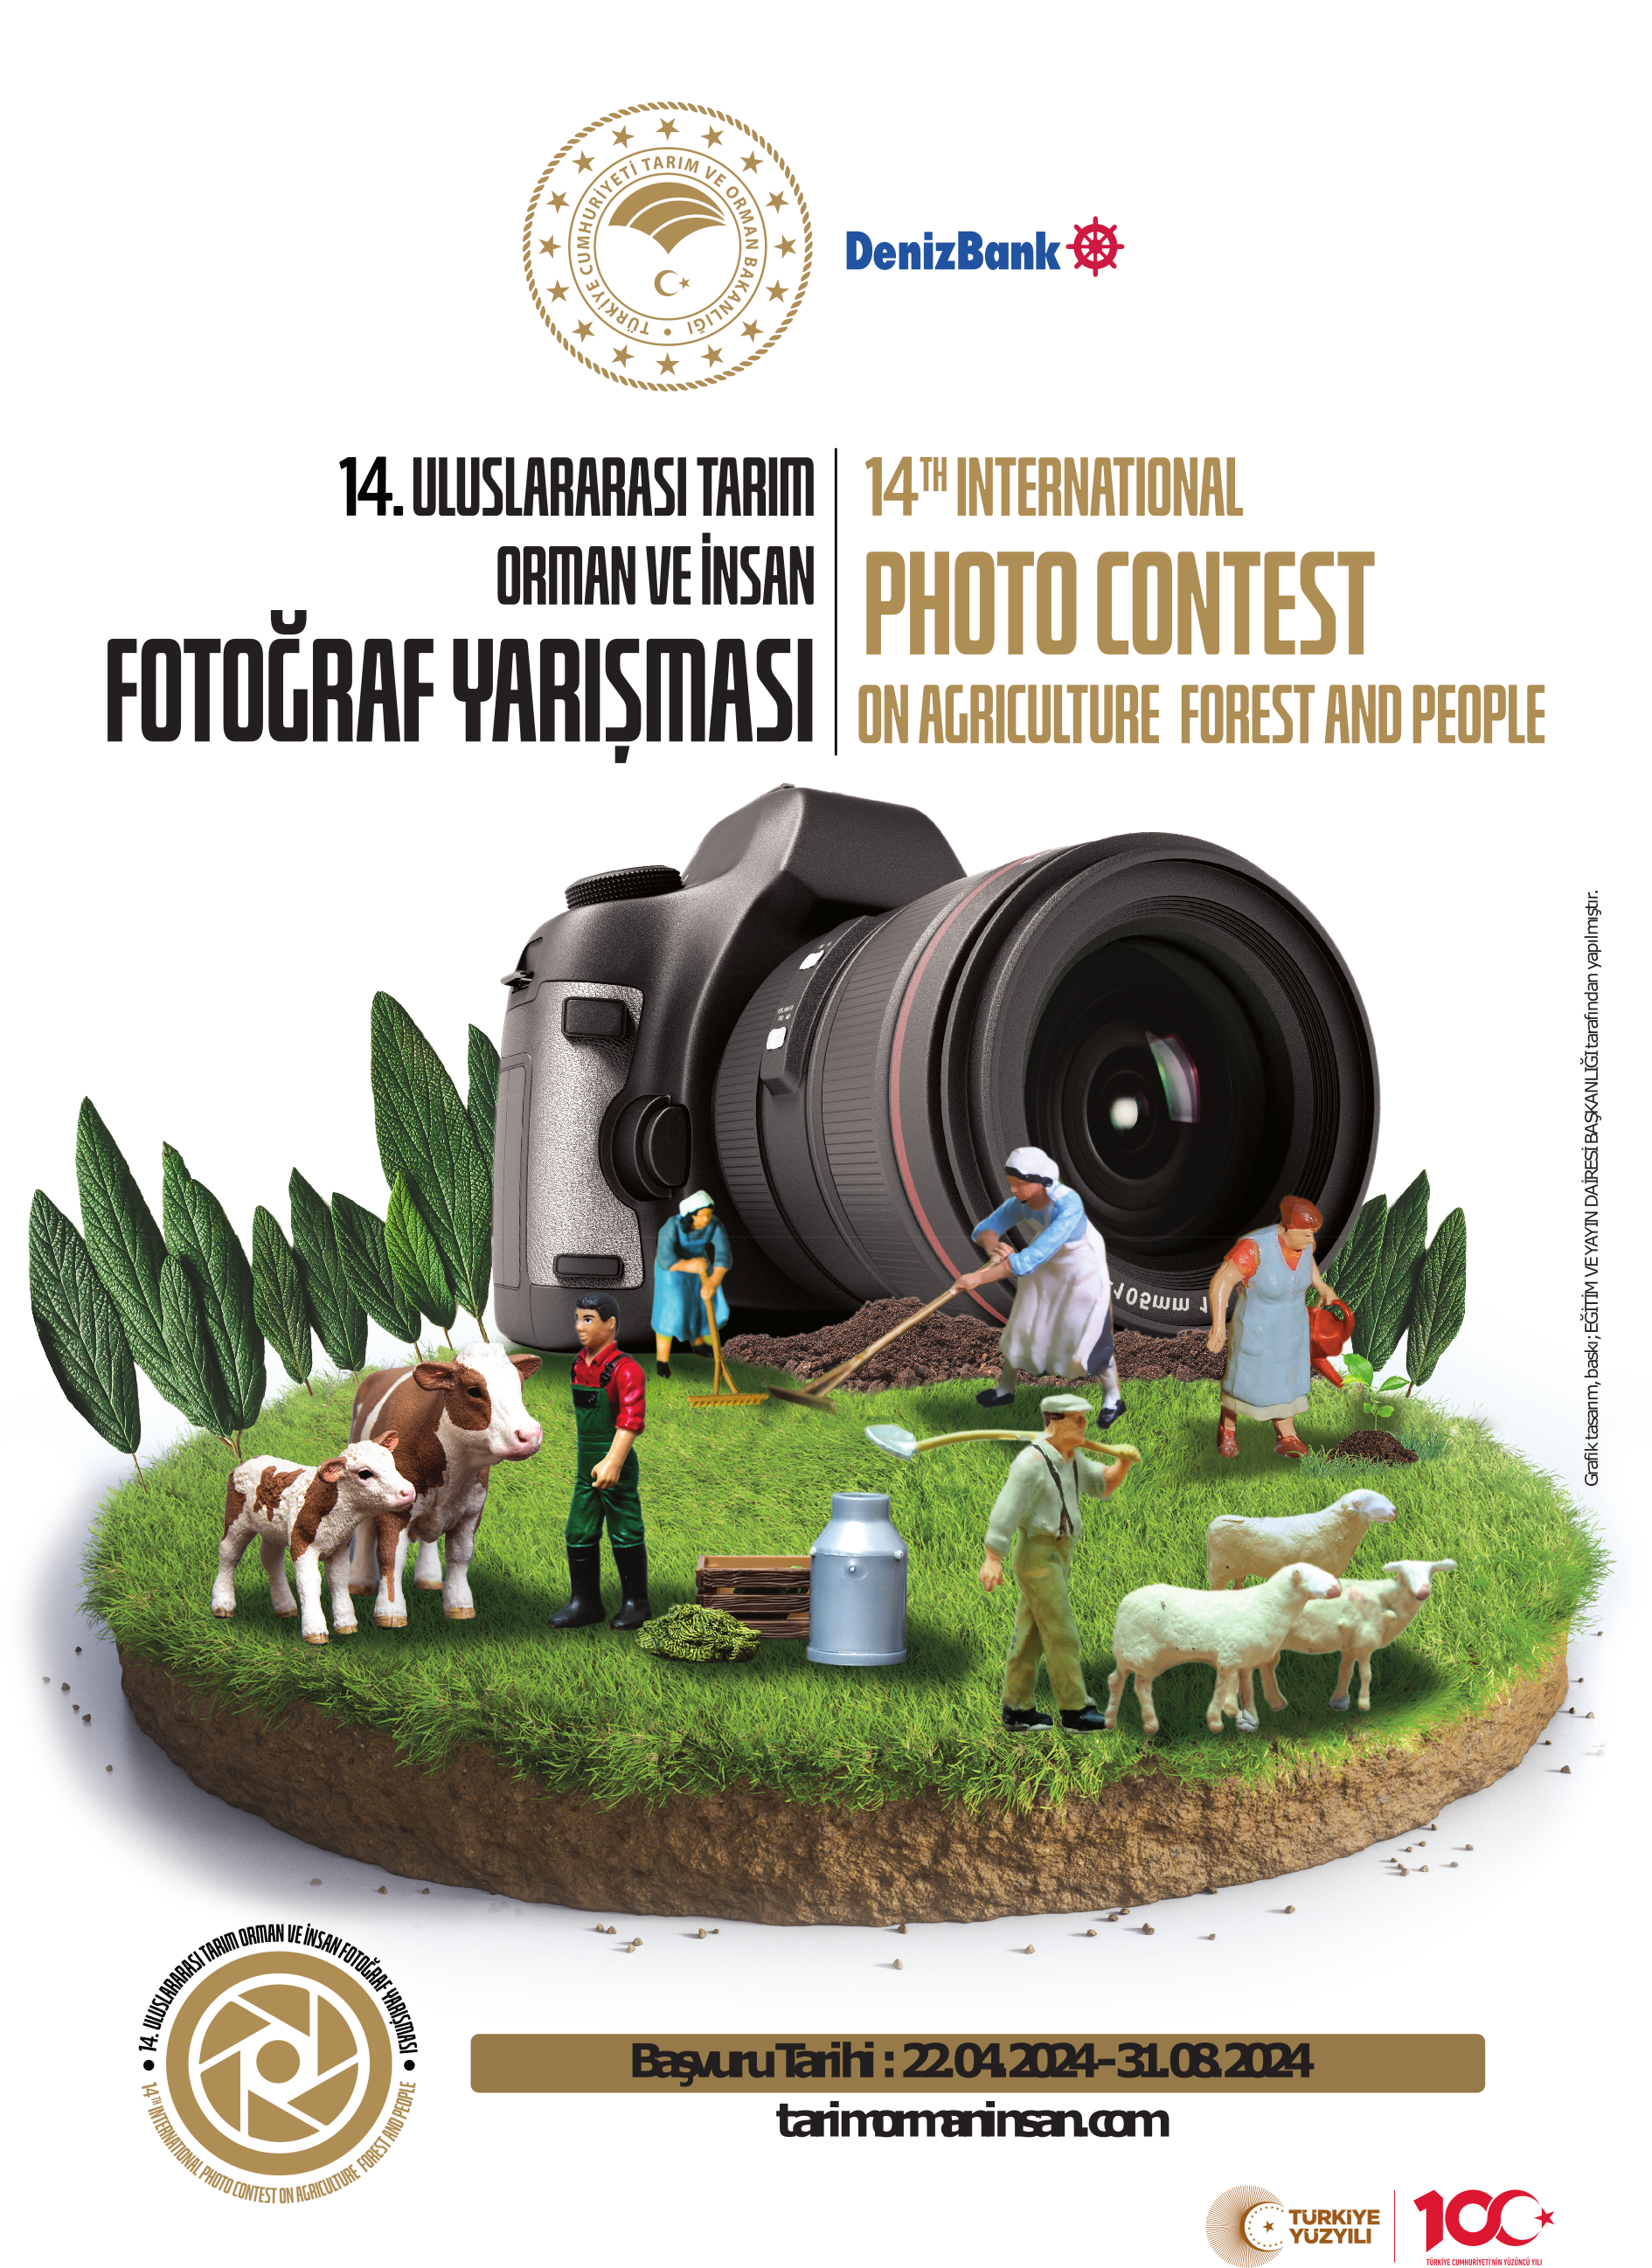 Tarım Orman ve İnsan Fotoğraf Yarışması